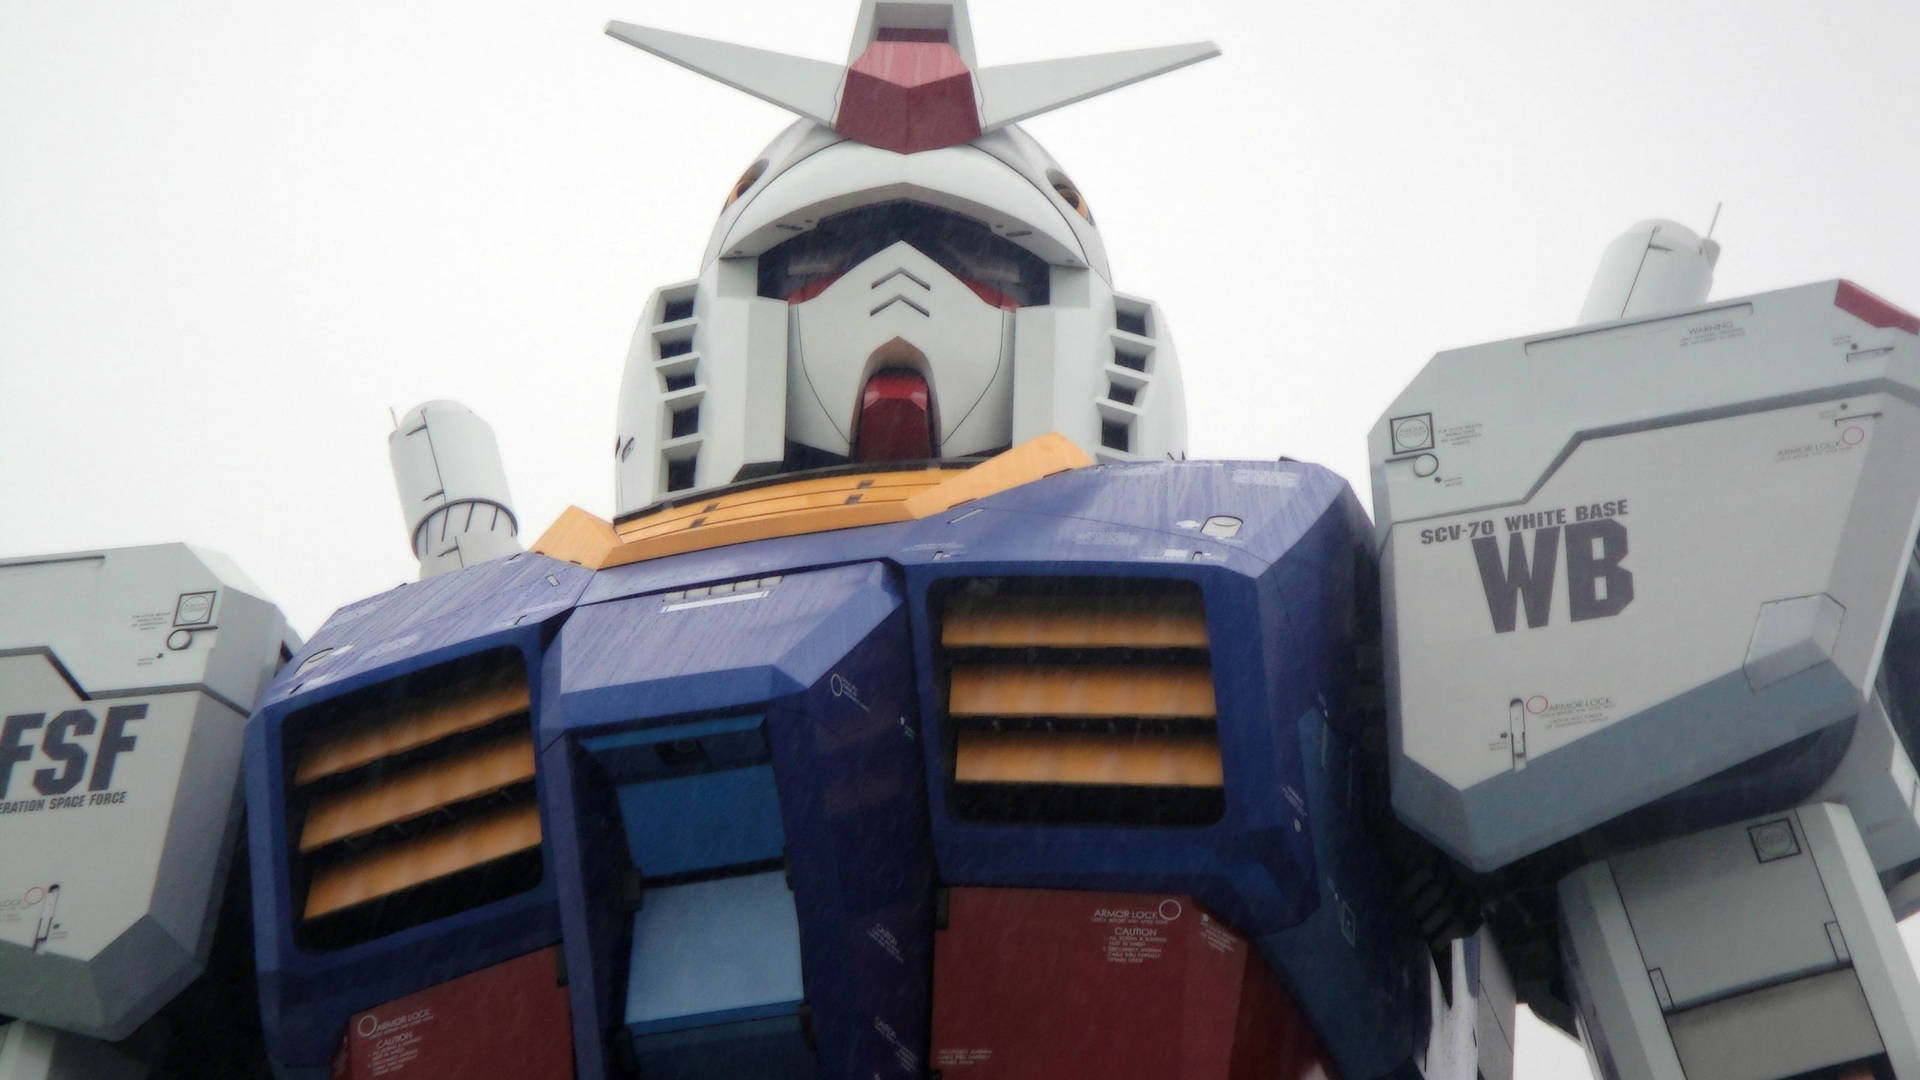 Gundam Suit Statue In Japan